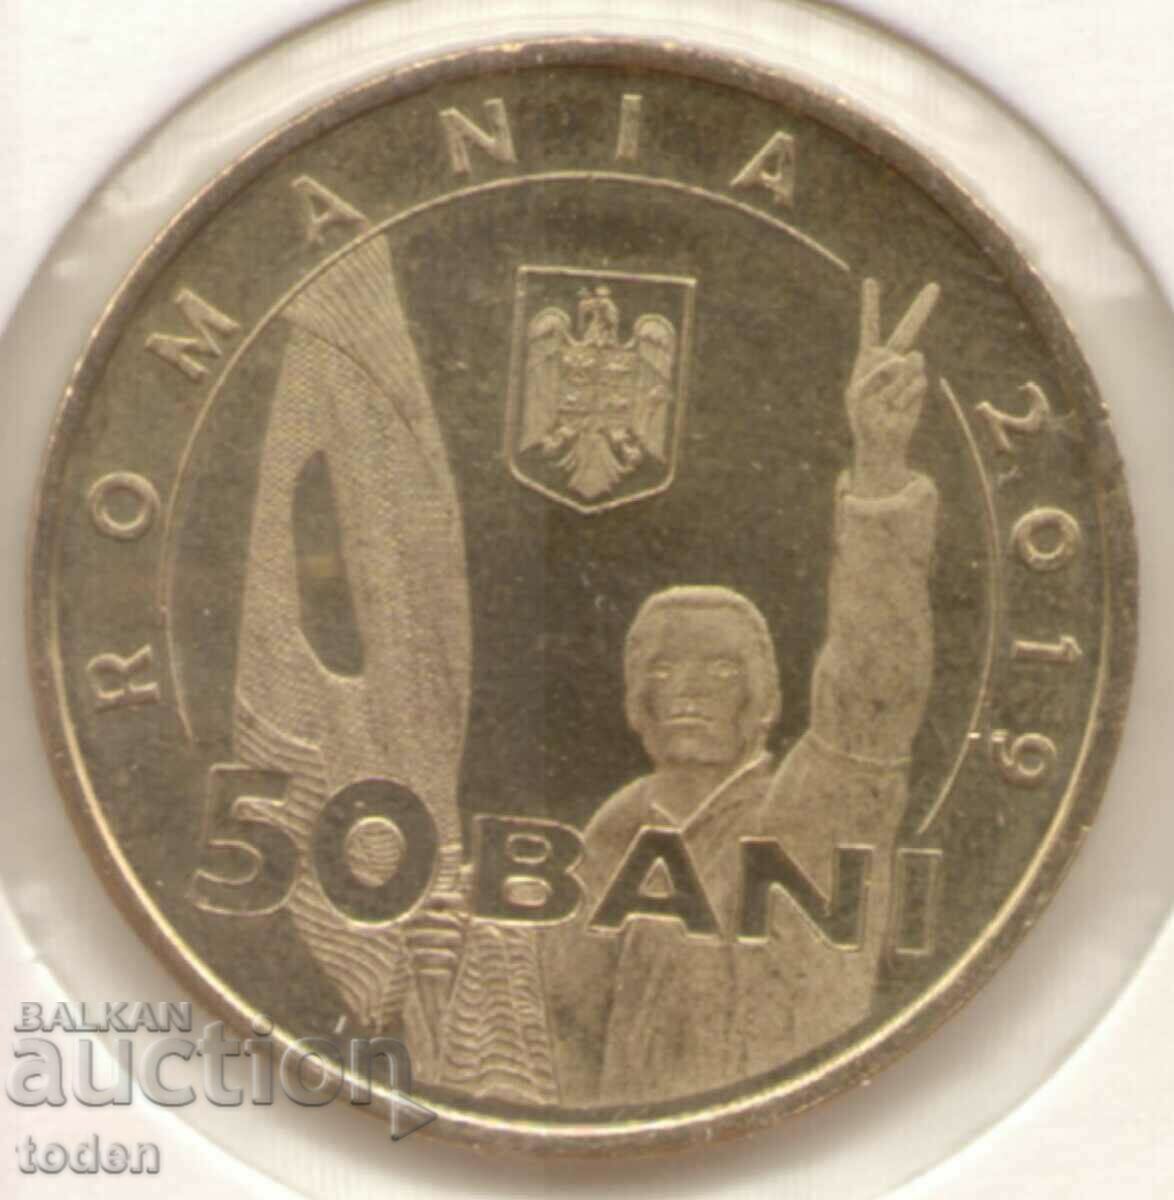 Romania-50 Bani-2019-KM# 445-Revolutia din Decembrie 1989